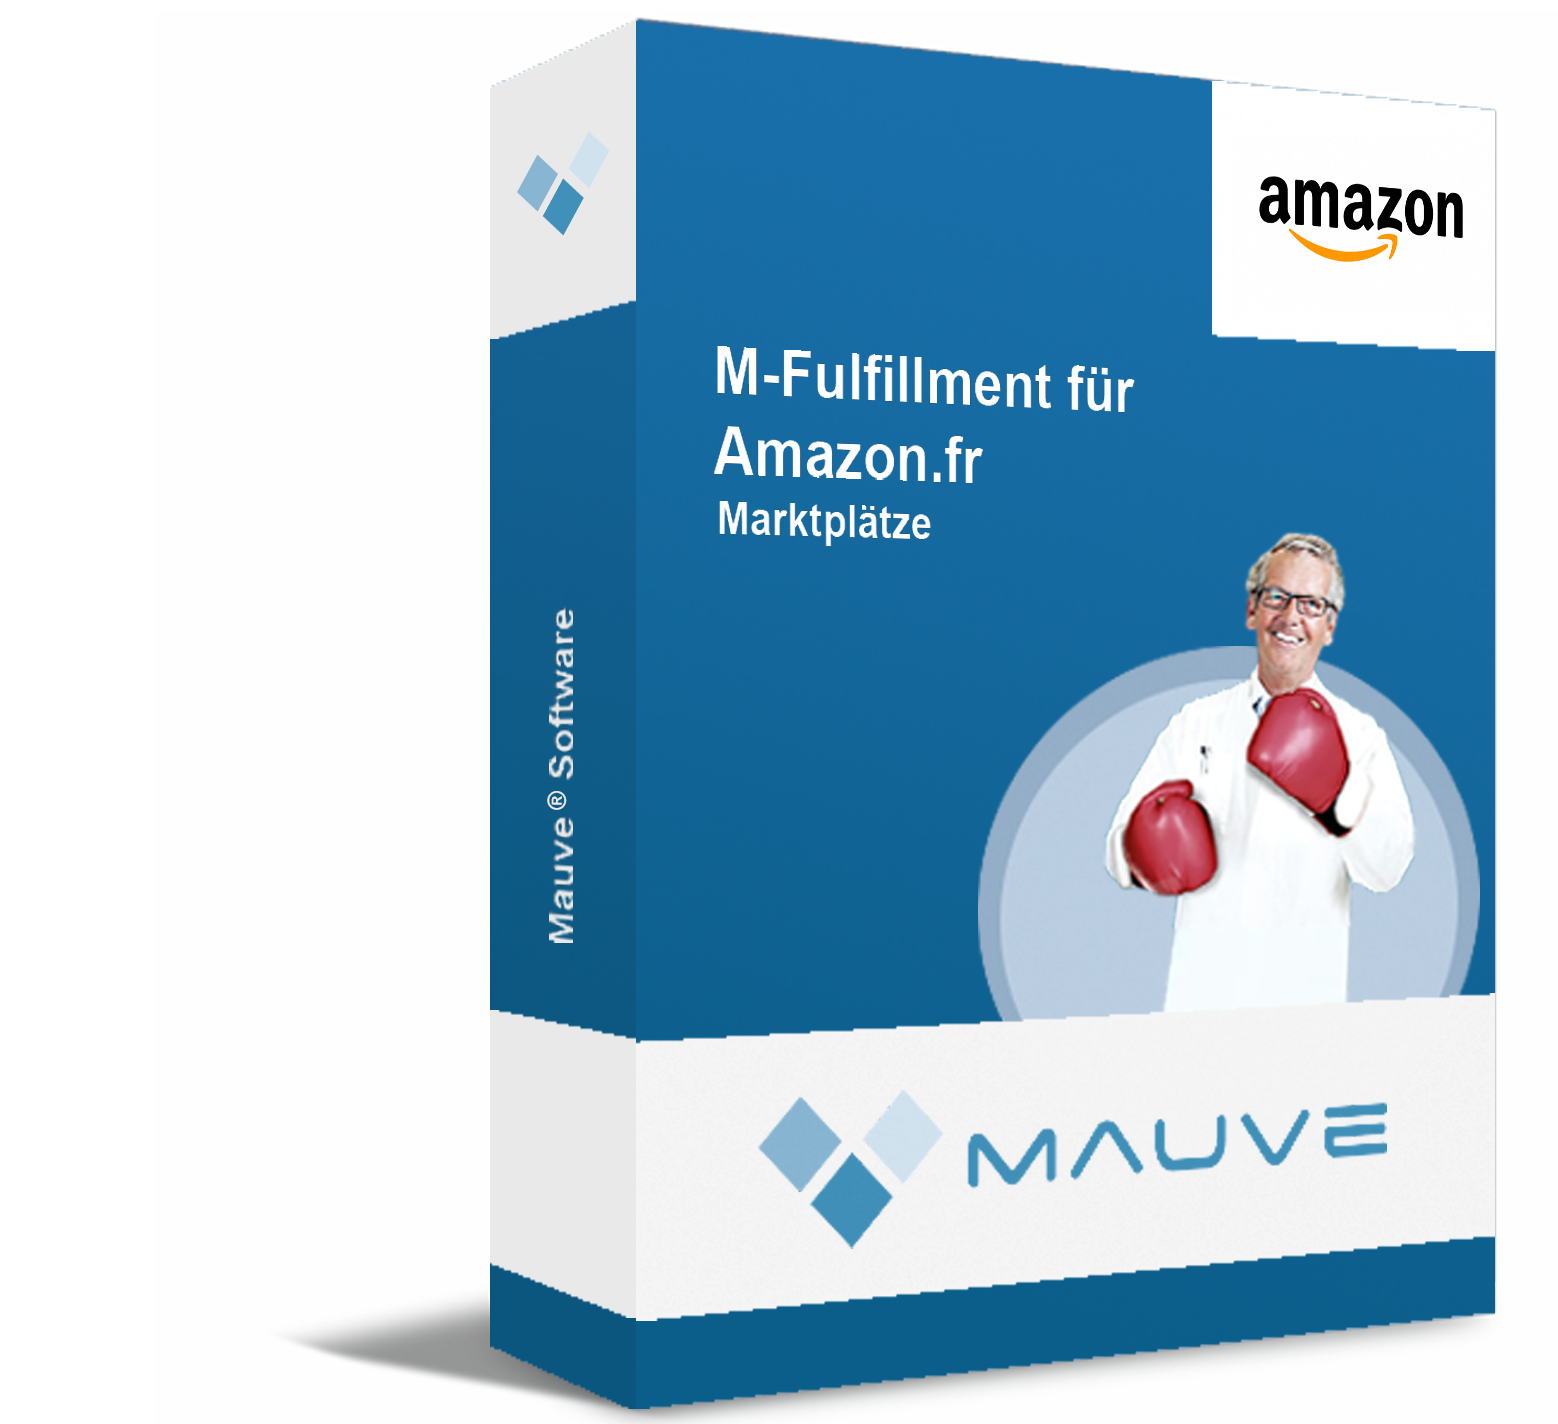 M-Fulfillment für Amazon.fr